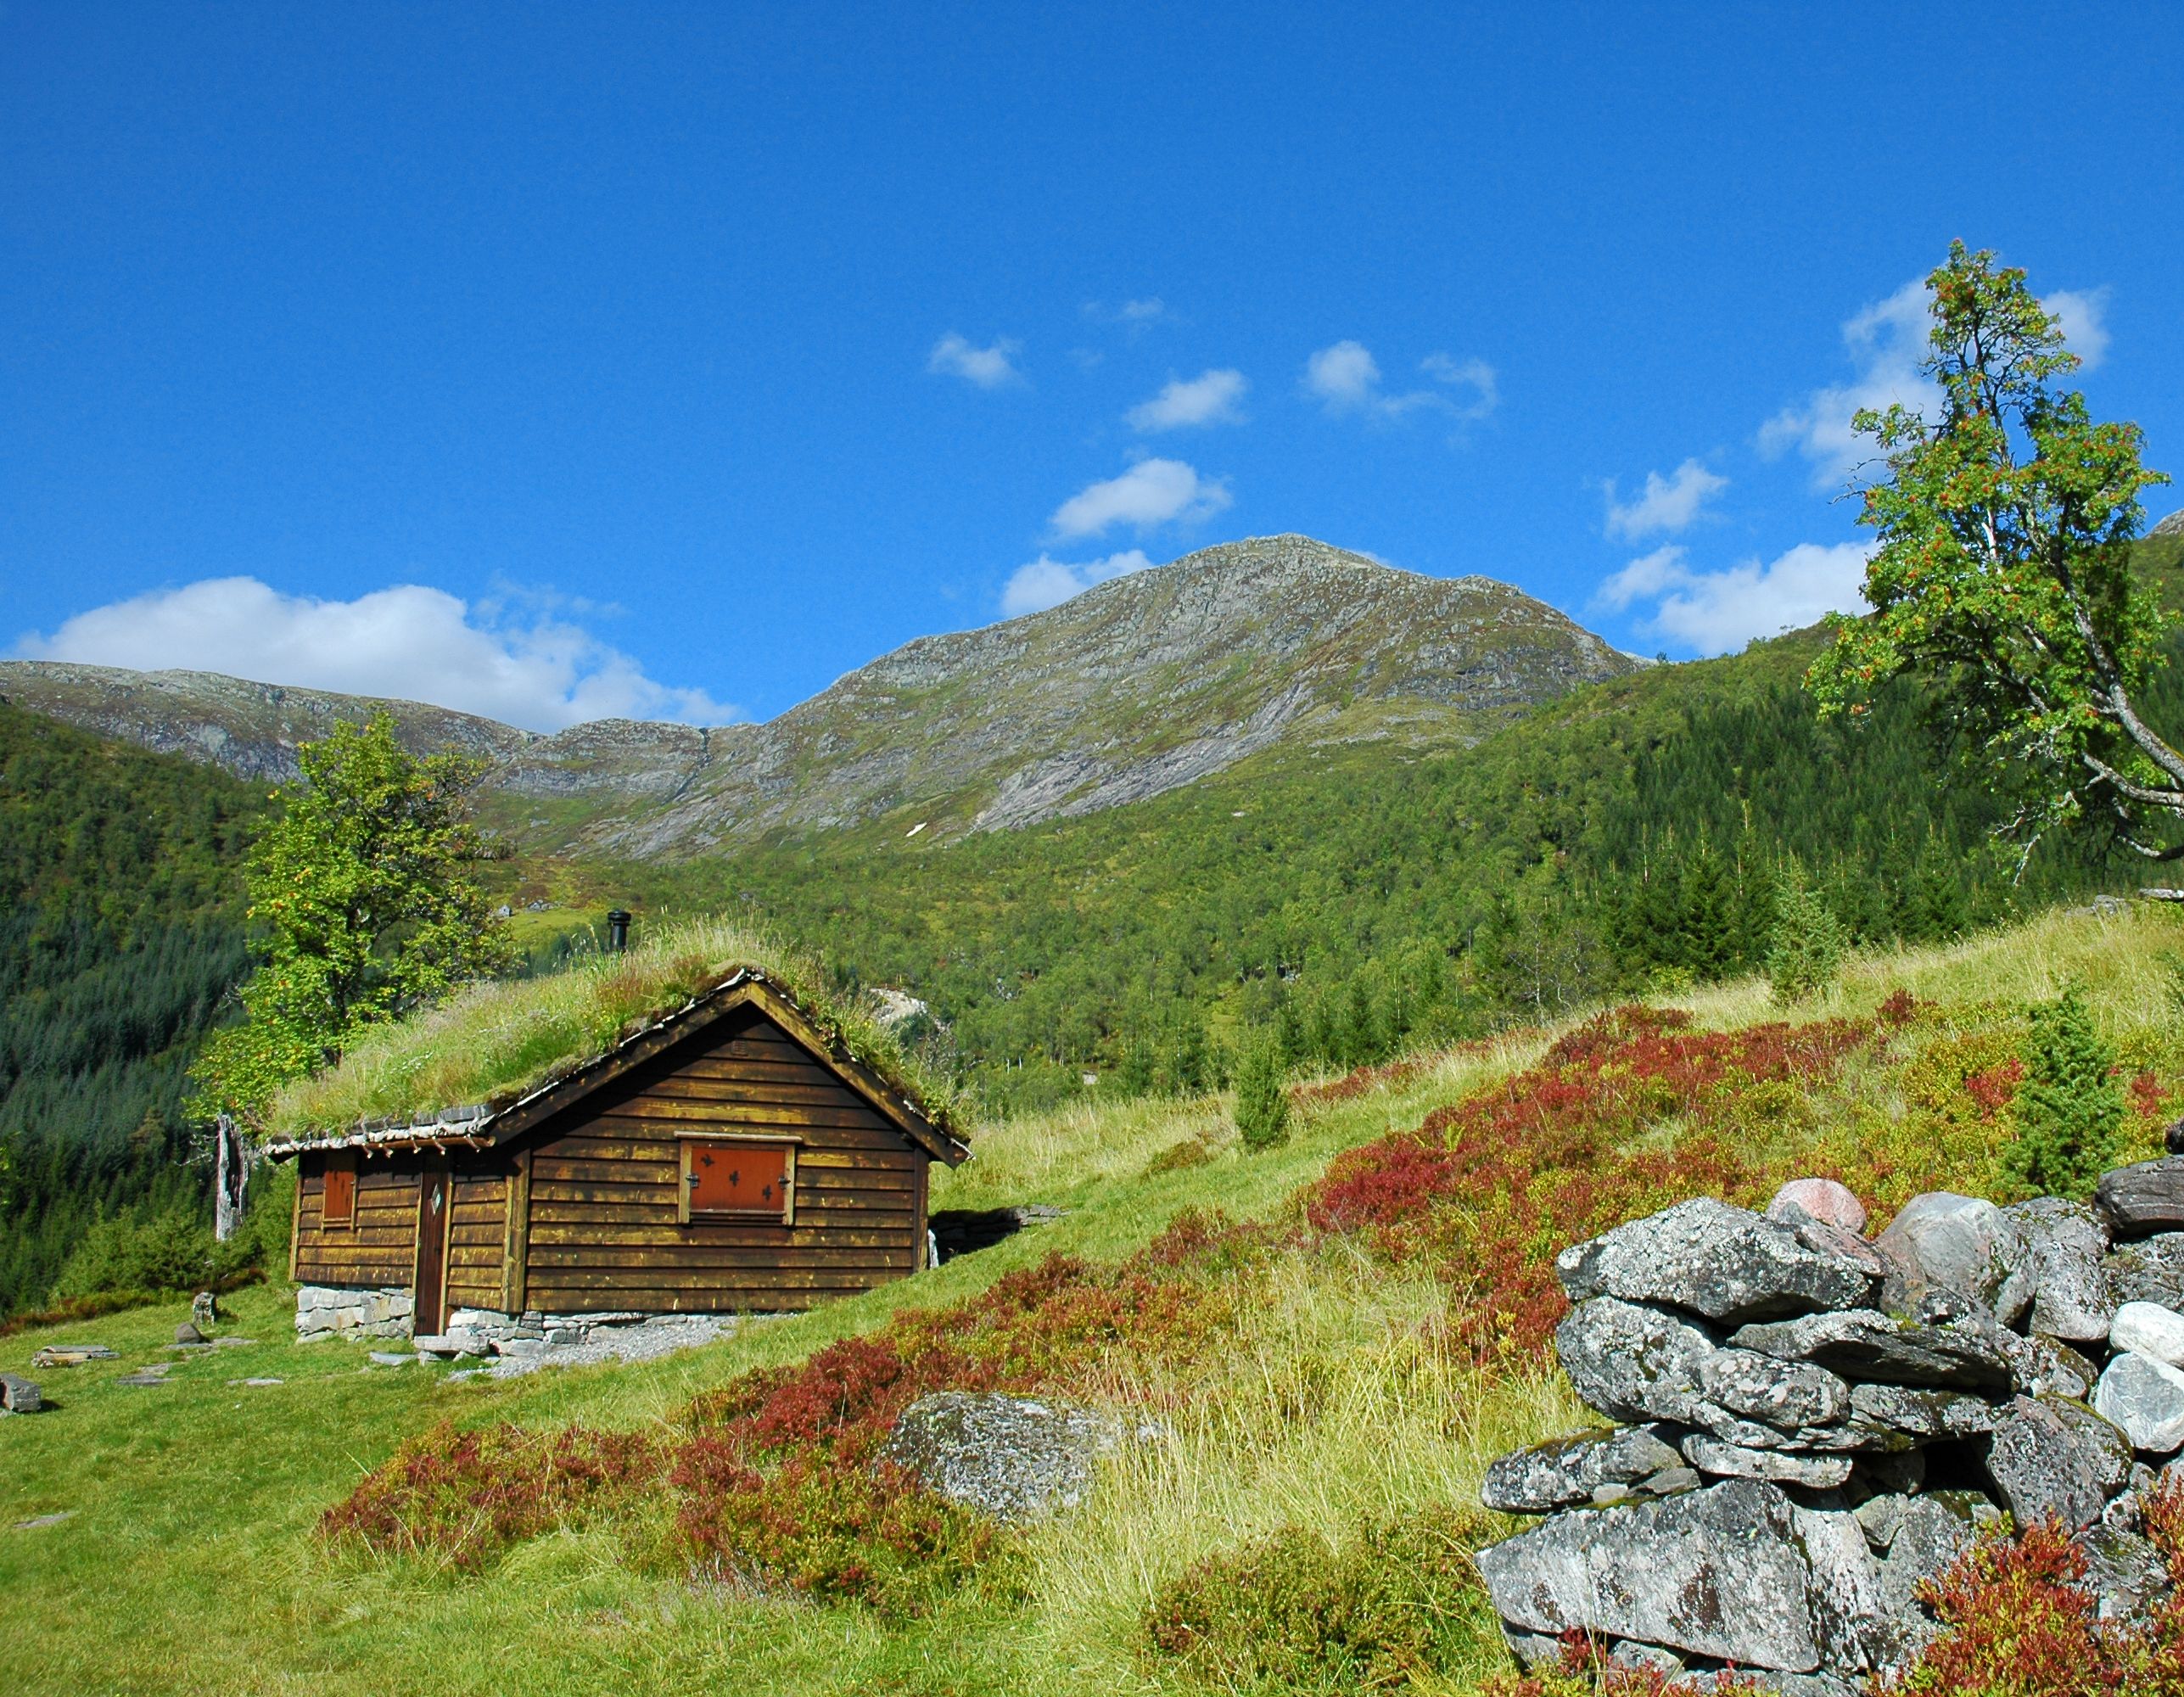 Norwegian cabin in autumn colors